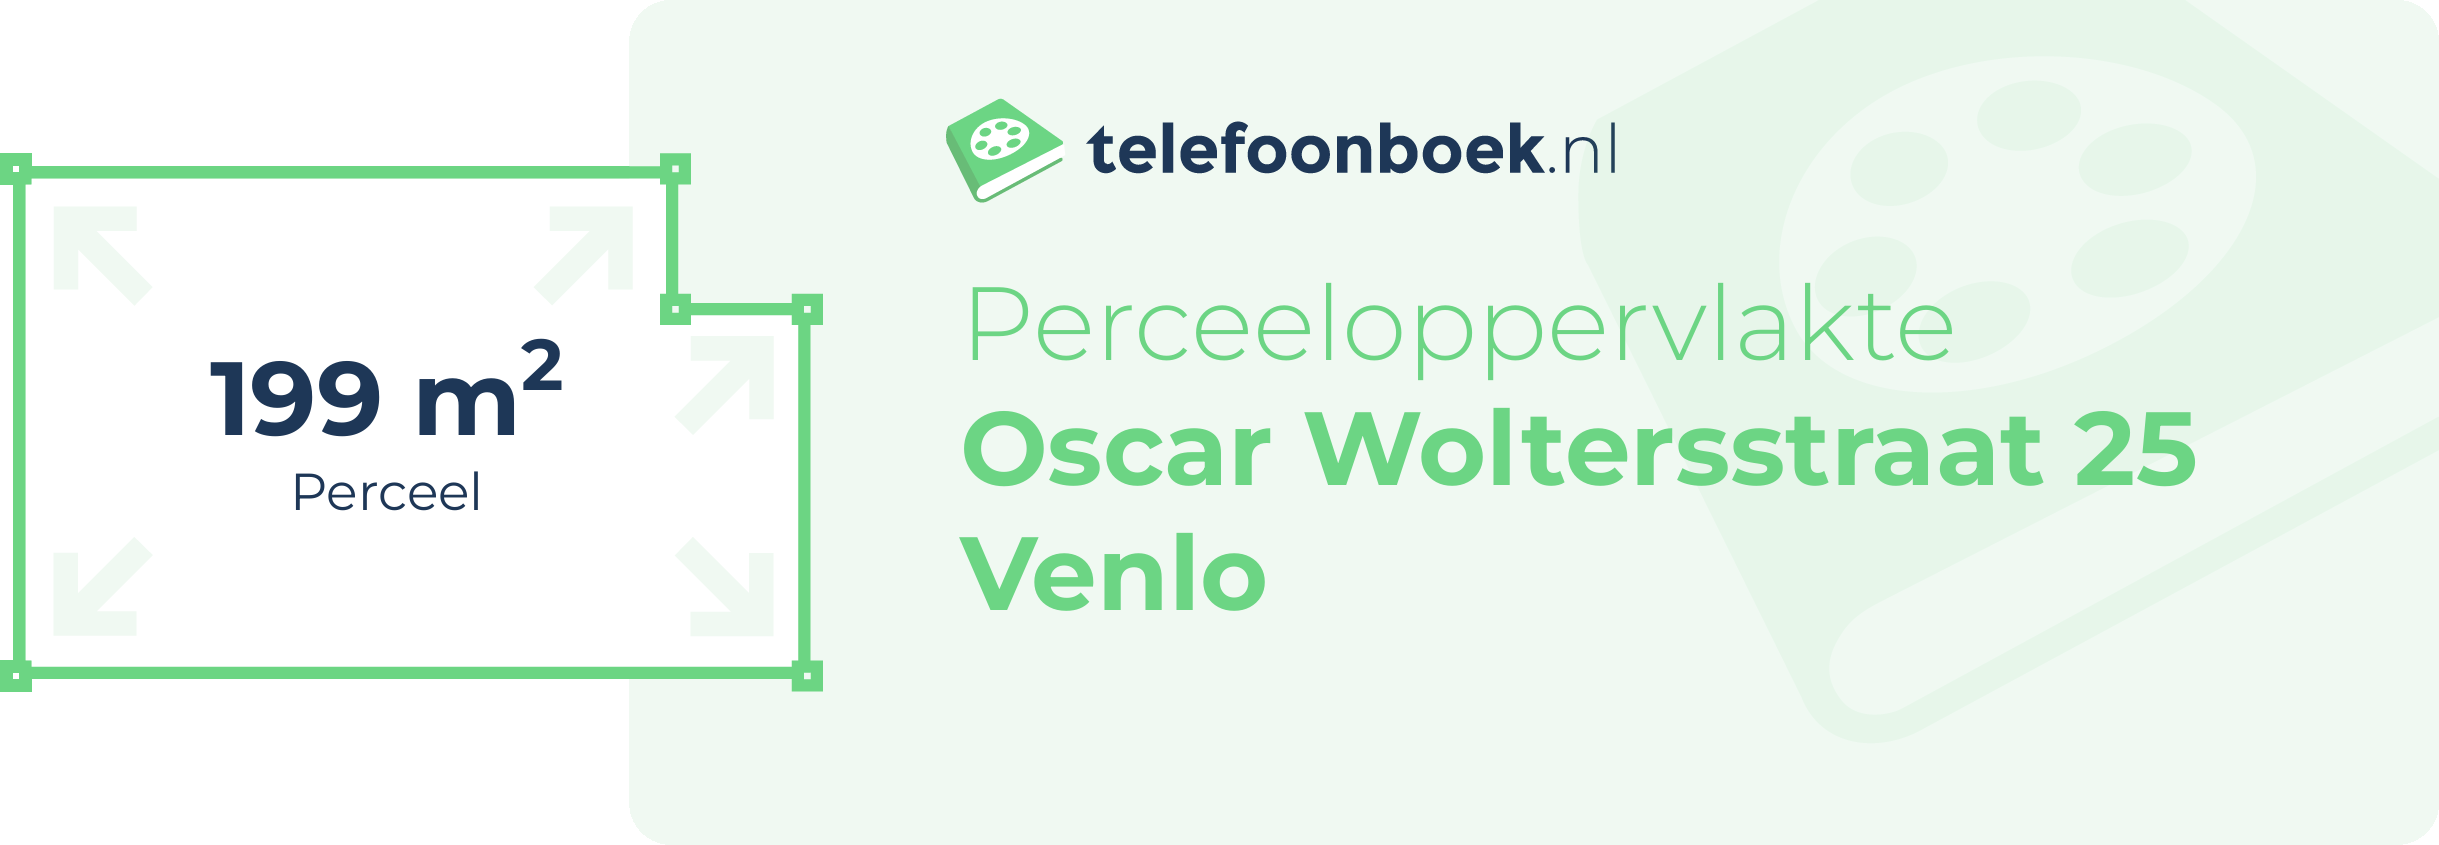 Perceeloppervlakte Oscar Woltersstraat 25 Venlo